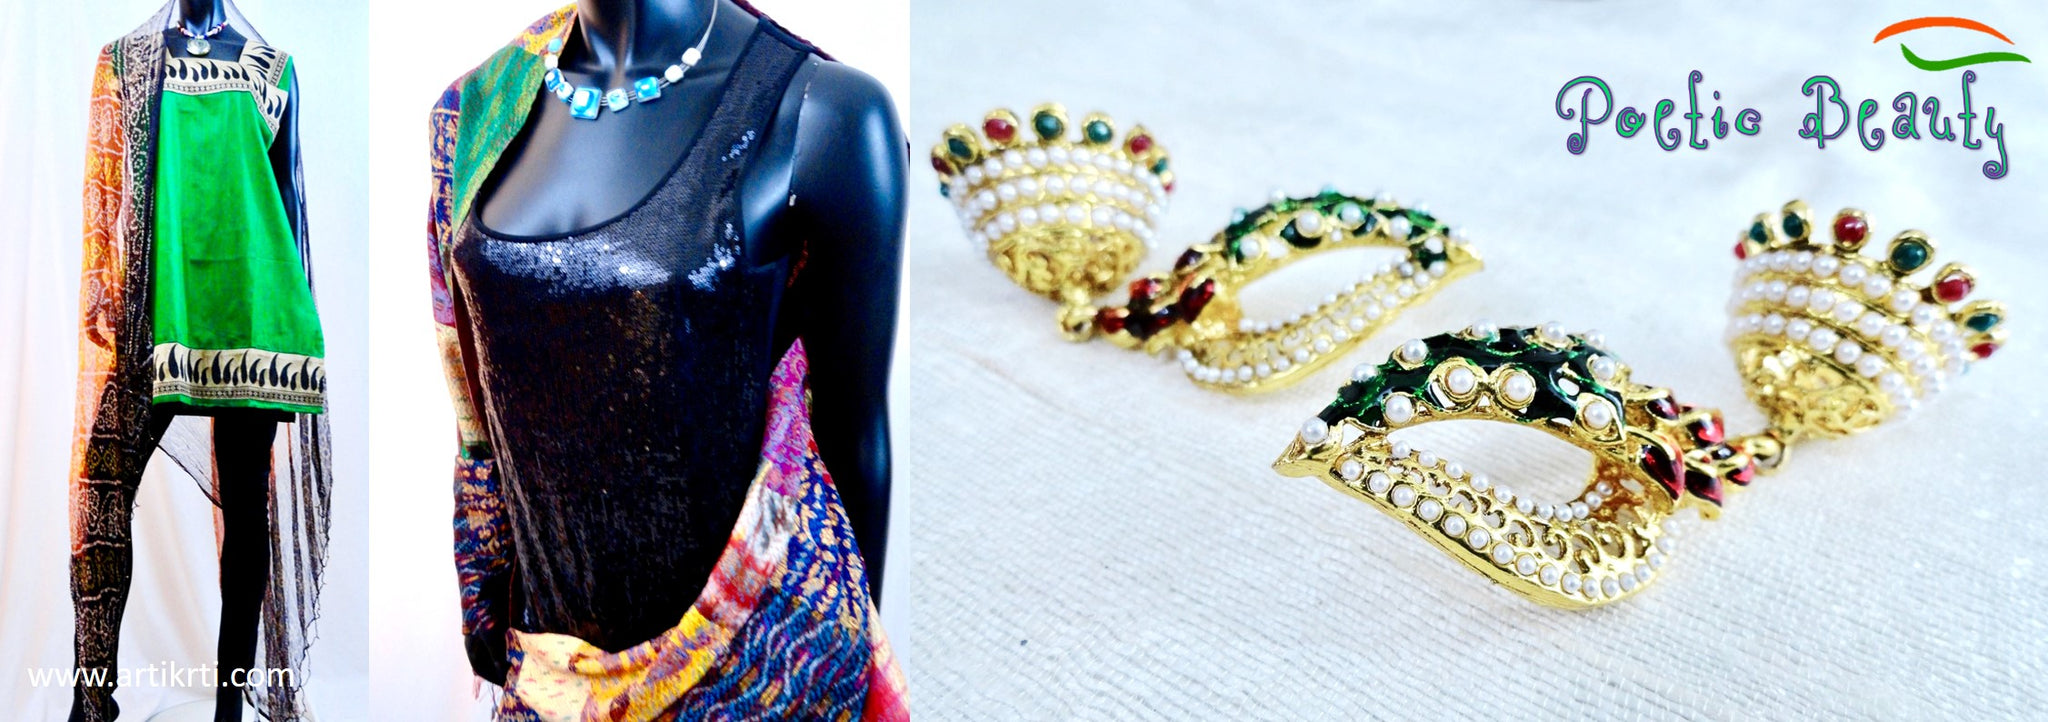 womenswear-skirts-indian-jewelry-bracelts-earrings-necklaces-artikrti